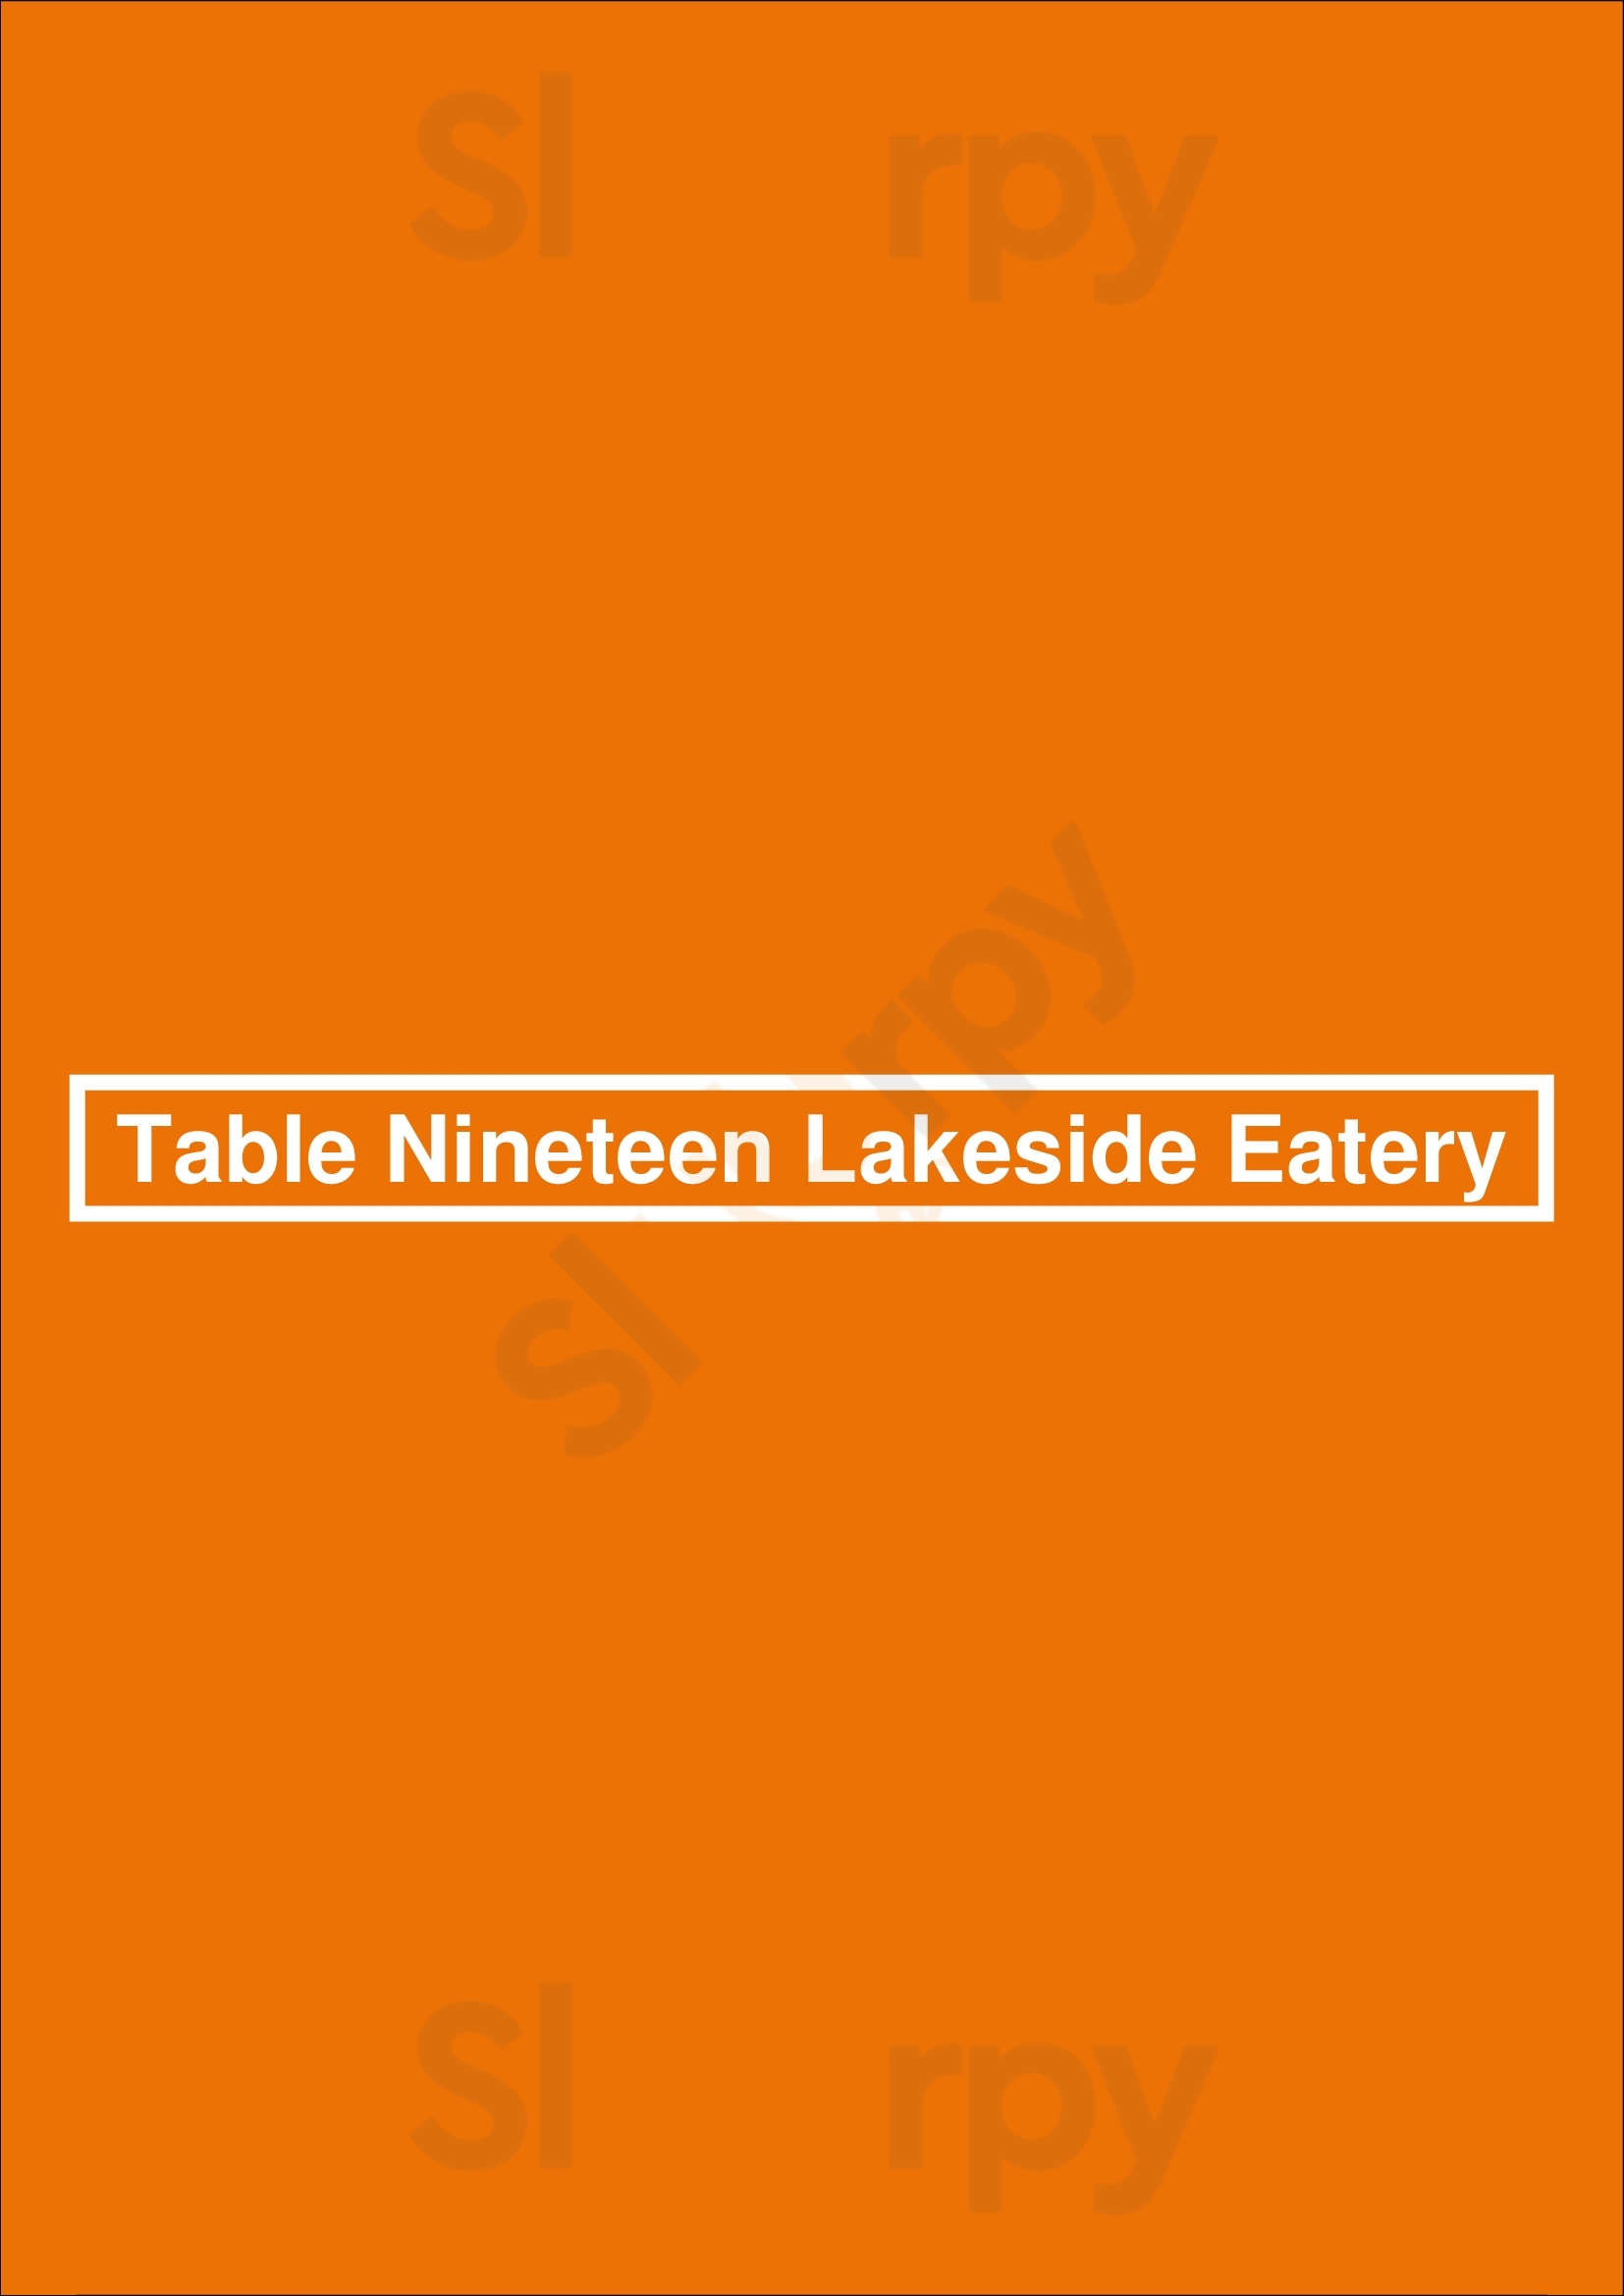 Table Nineteen Whistler Whistler Menu - 1